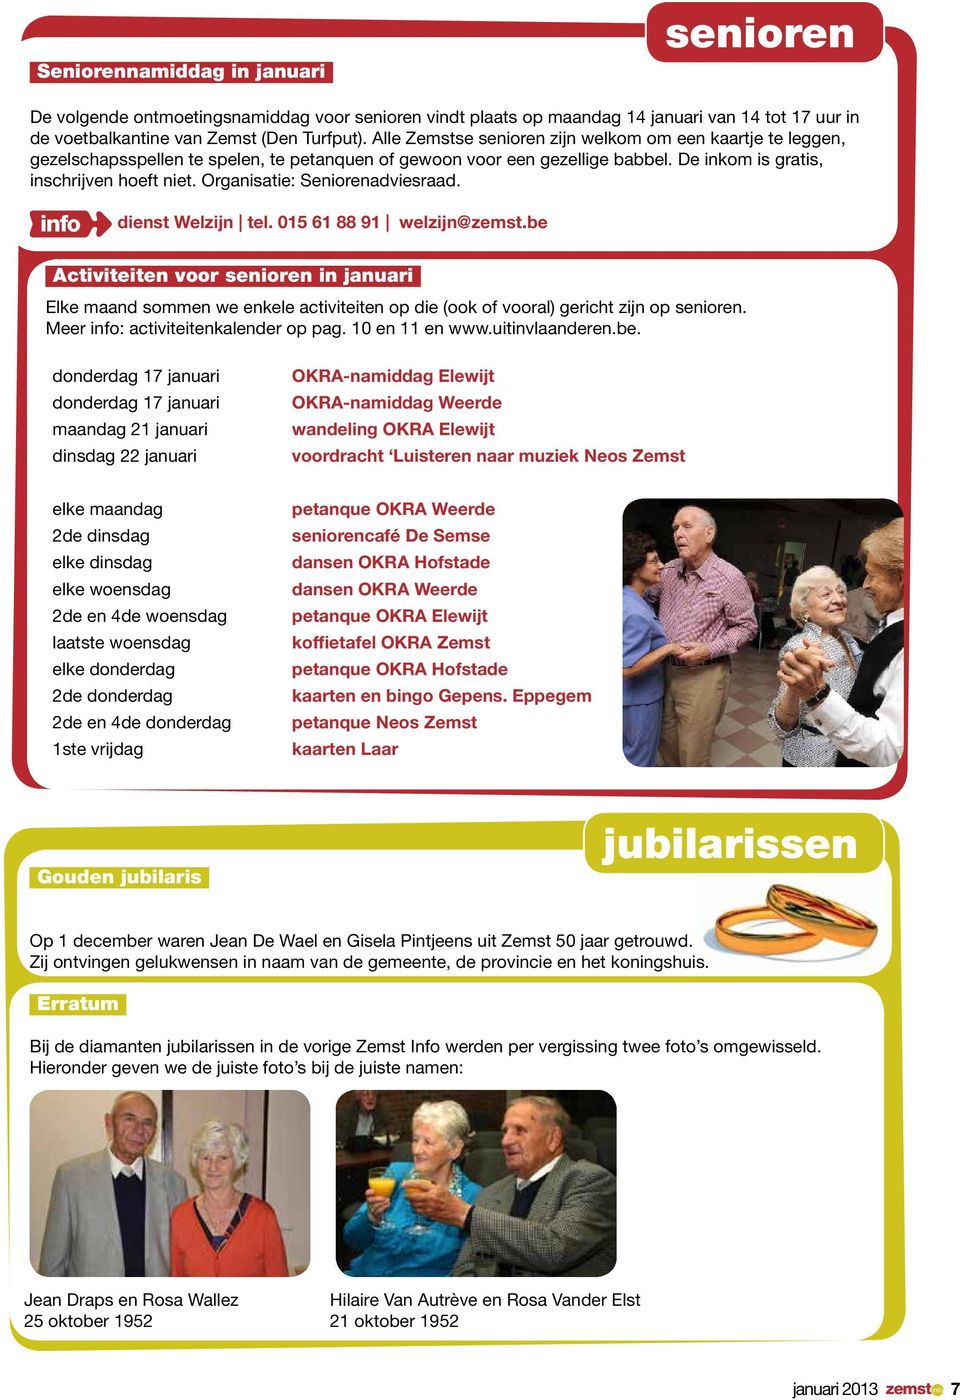 Organisatie: Seniorenadviesraad. dienst Welzijn tel. 015 61 88 91 welzijn@zemst.